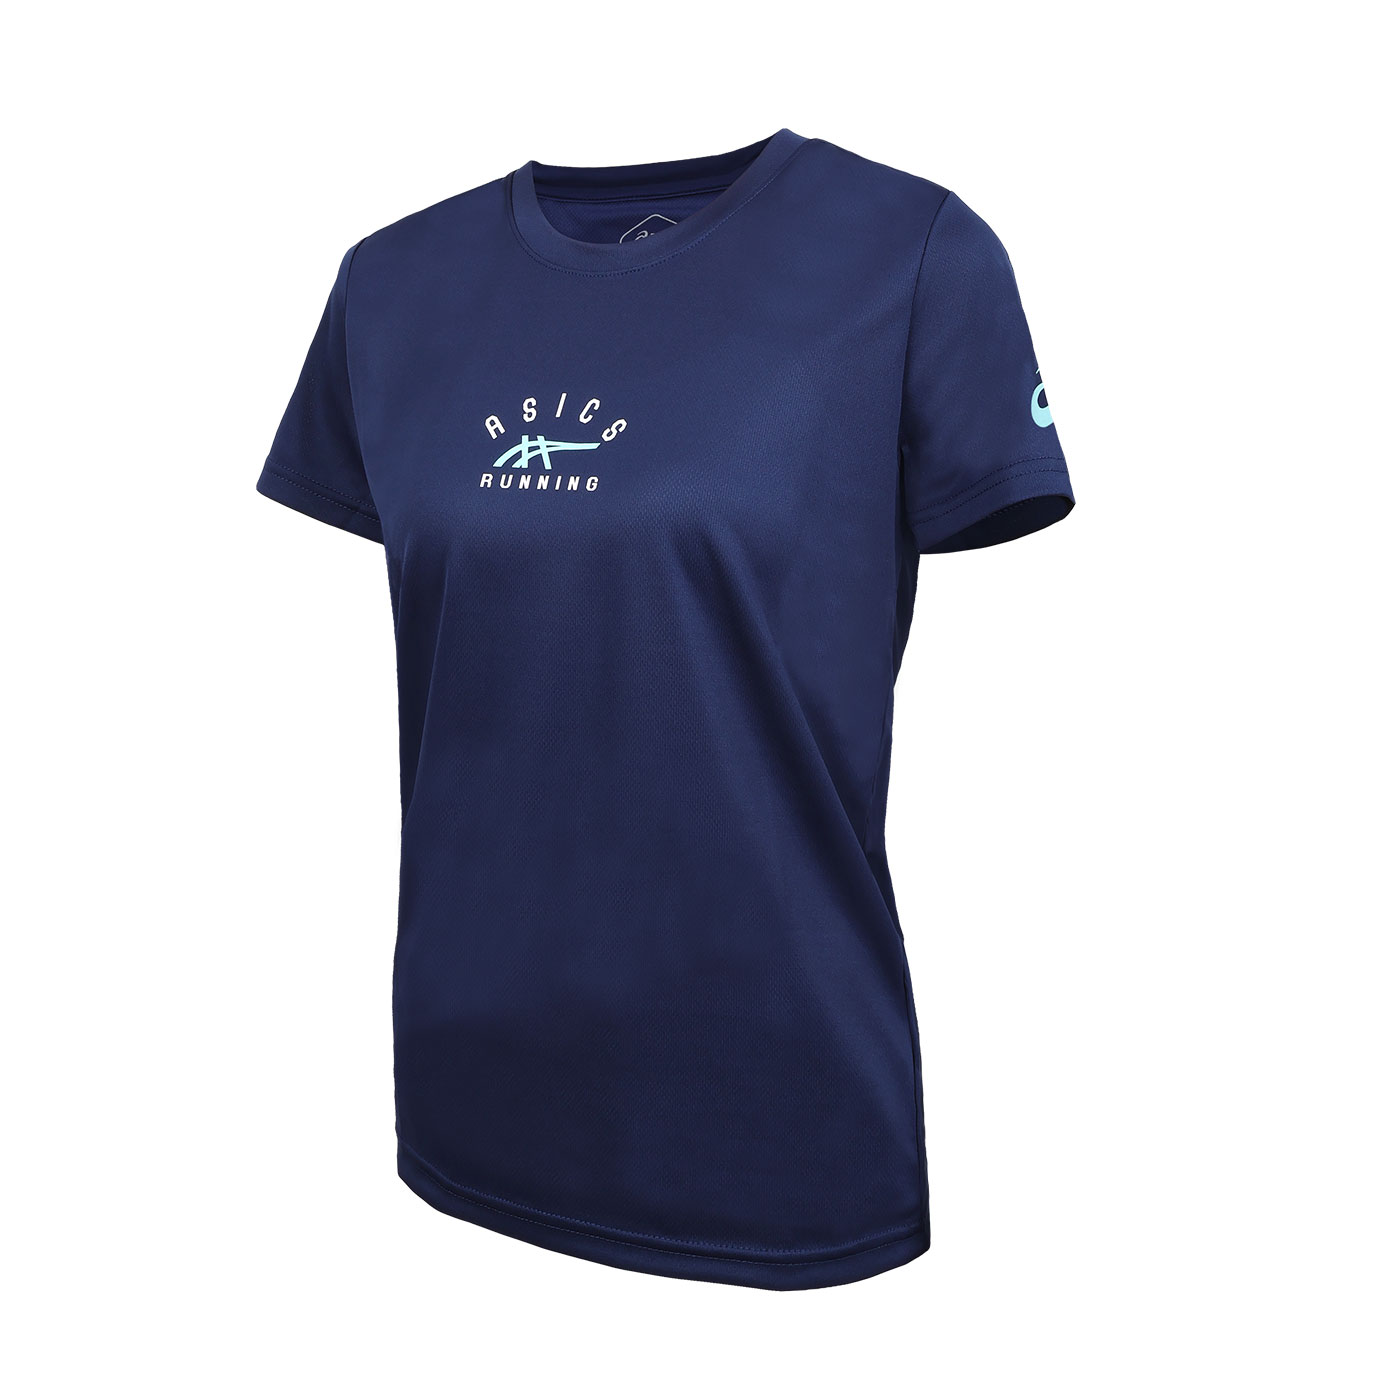 ASICS 女款短袖T恤  2012D104-400 - 丈青水藍白